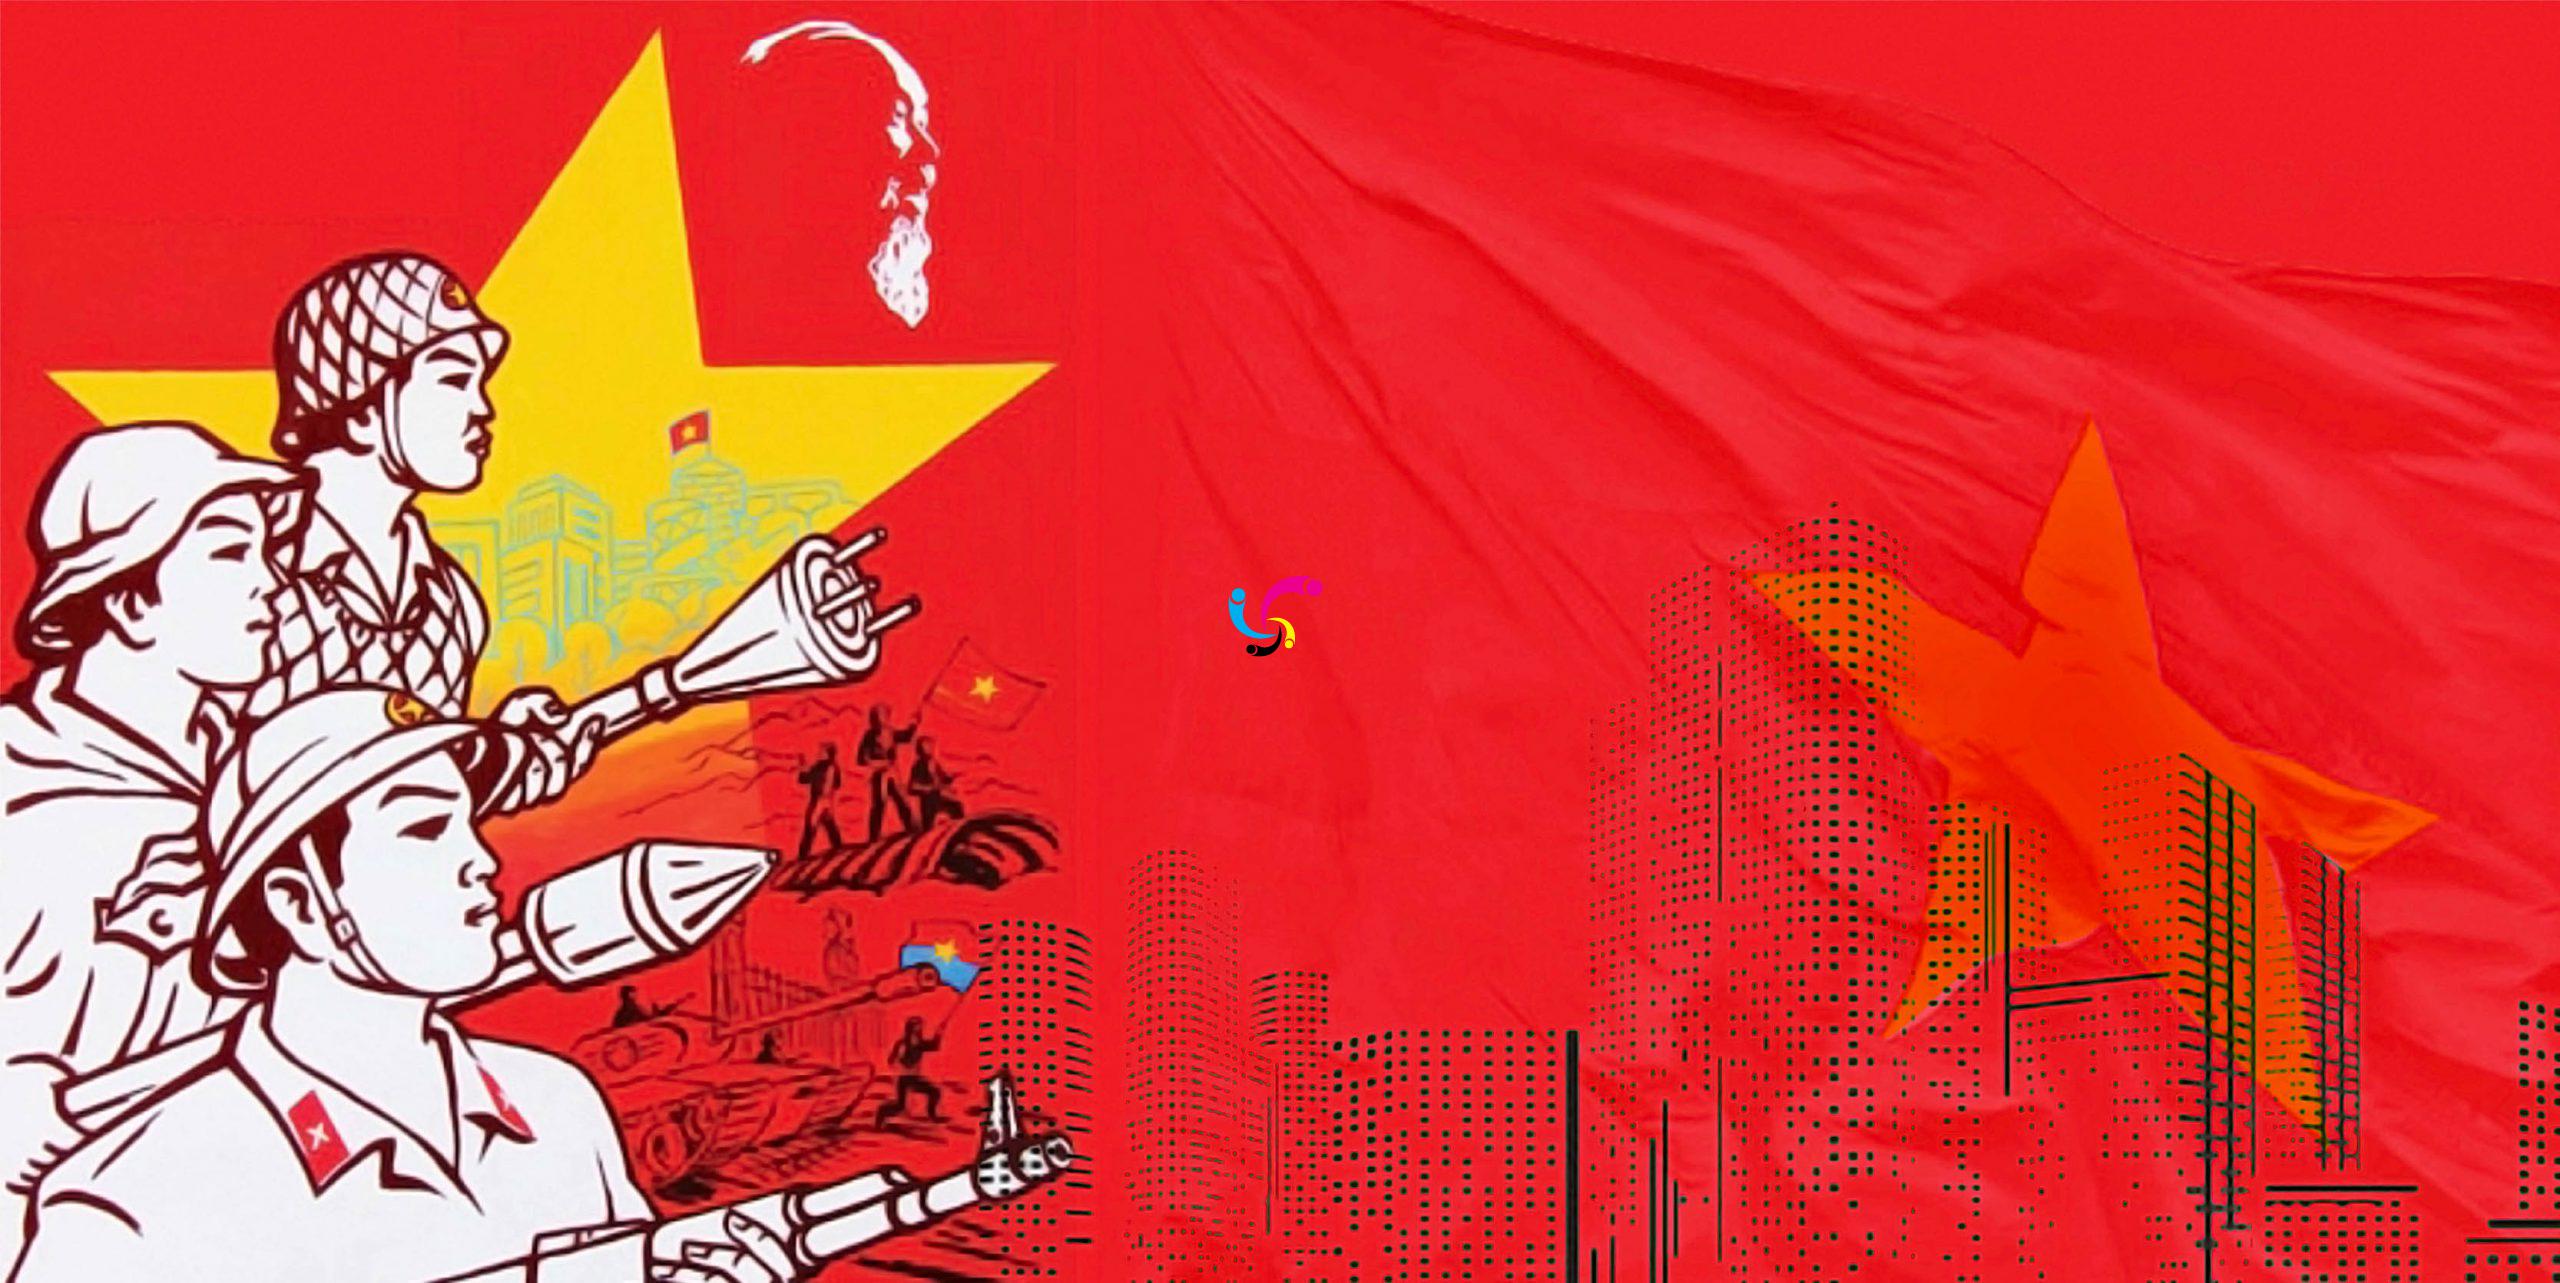 Lá cờ là biểu tượng tinh thần của người Việt Nam, và khi quý khách đến với hình ảnh này, họ sẽ hiểu được sức mạnh thần kỳ của lá cờ.